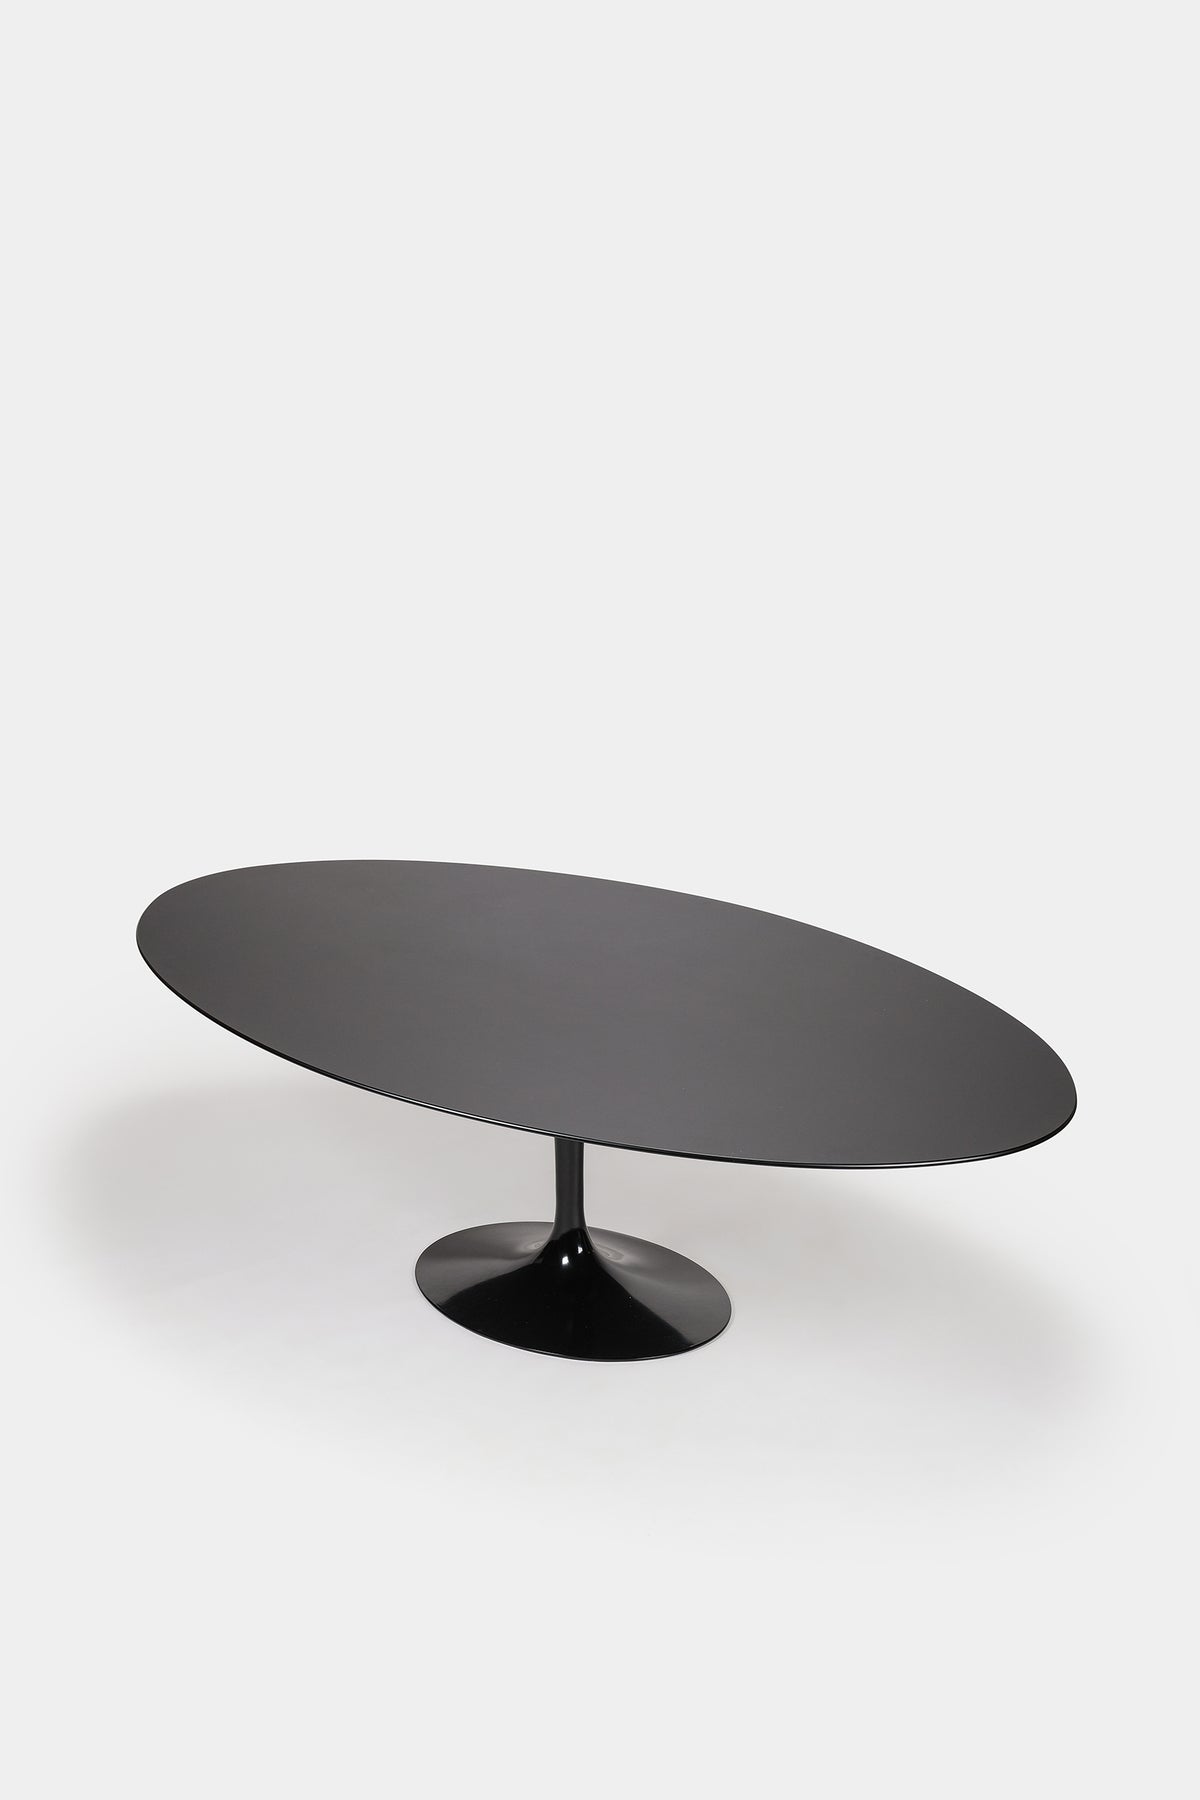 Eero Saarinen, Tulip Tisch Oval XXL, Knoll International, 50er